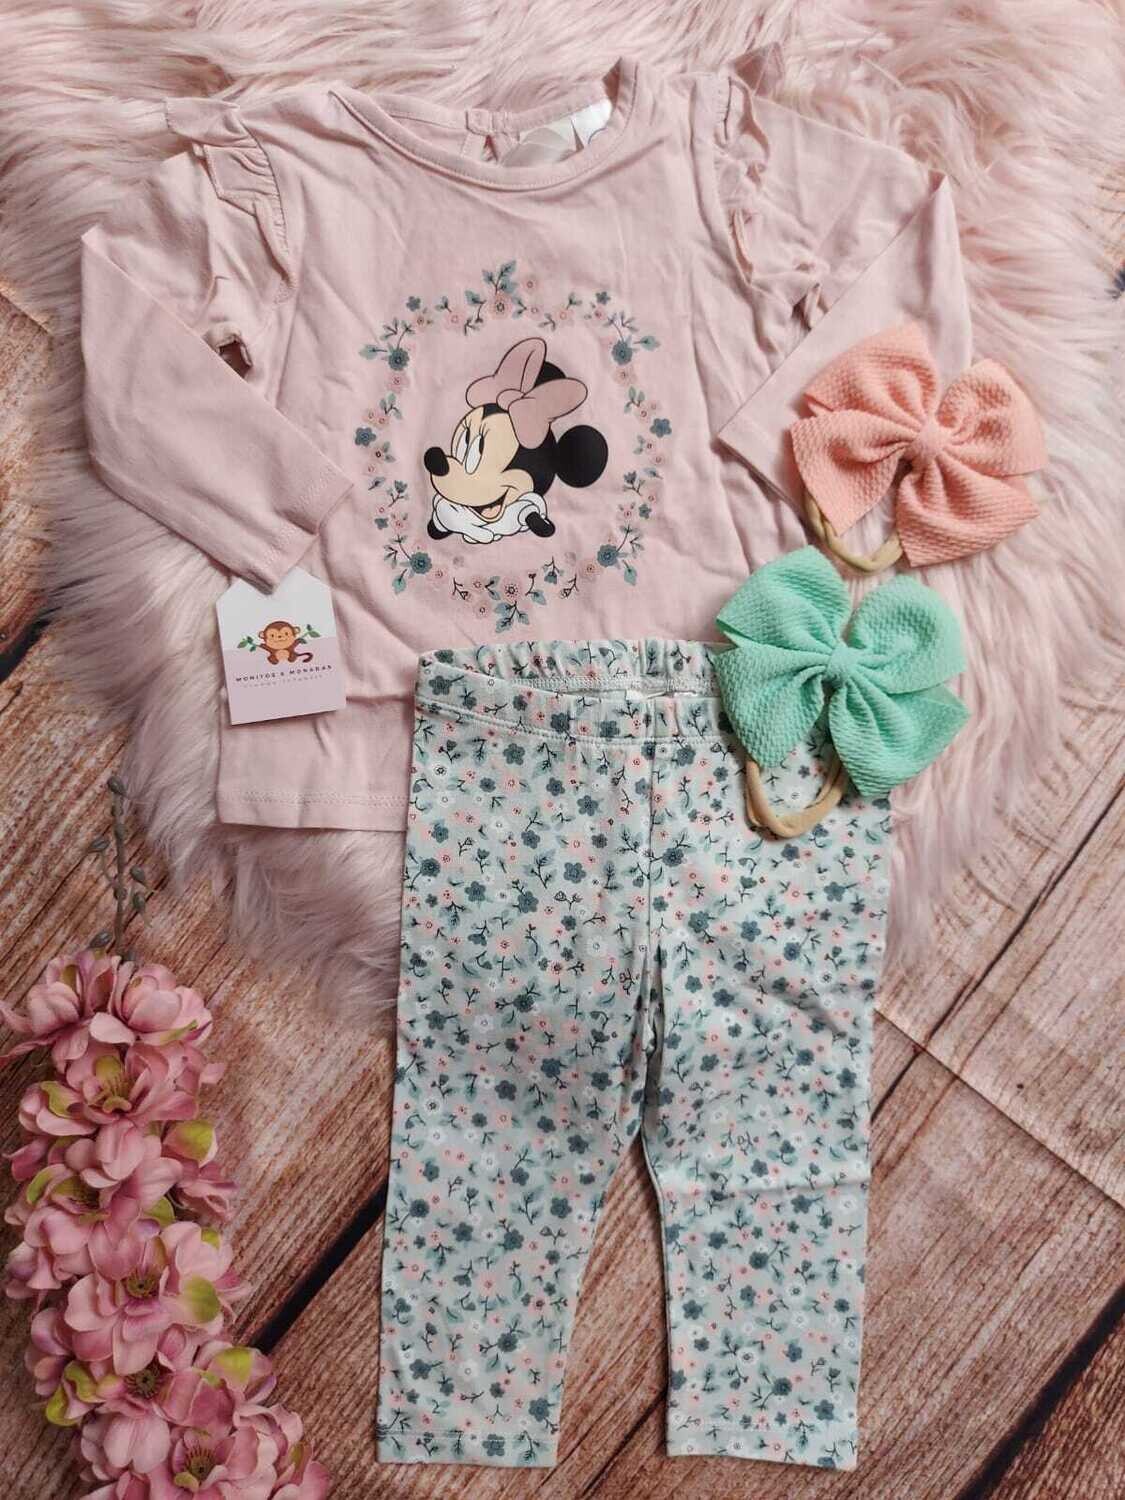 Set 2 piezas hm, blusa palo de rosa minnie + leggins flores verdes, 9 meses